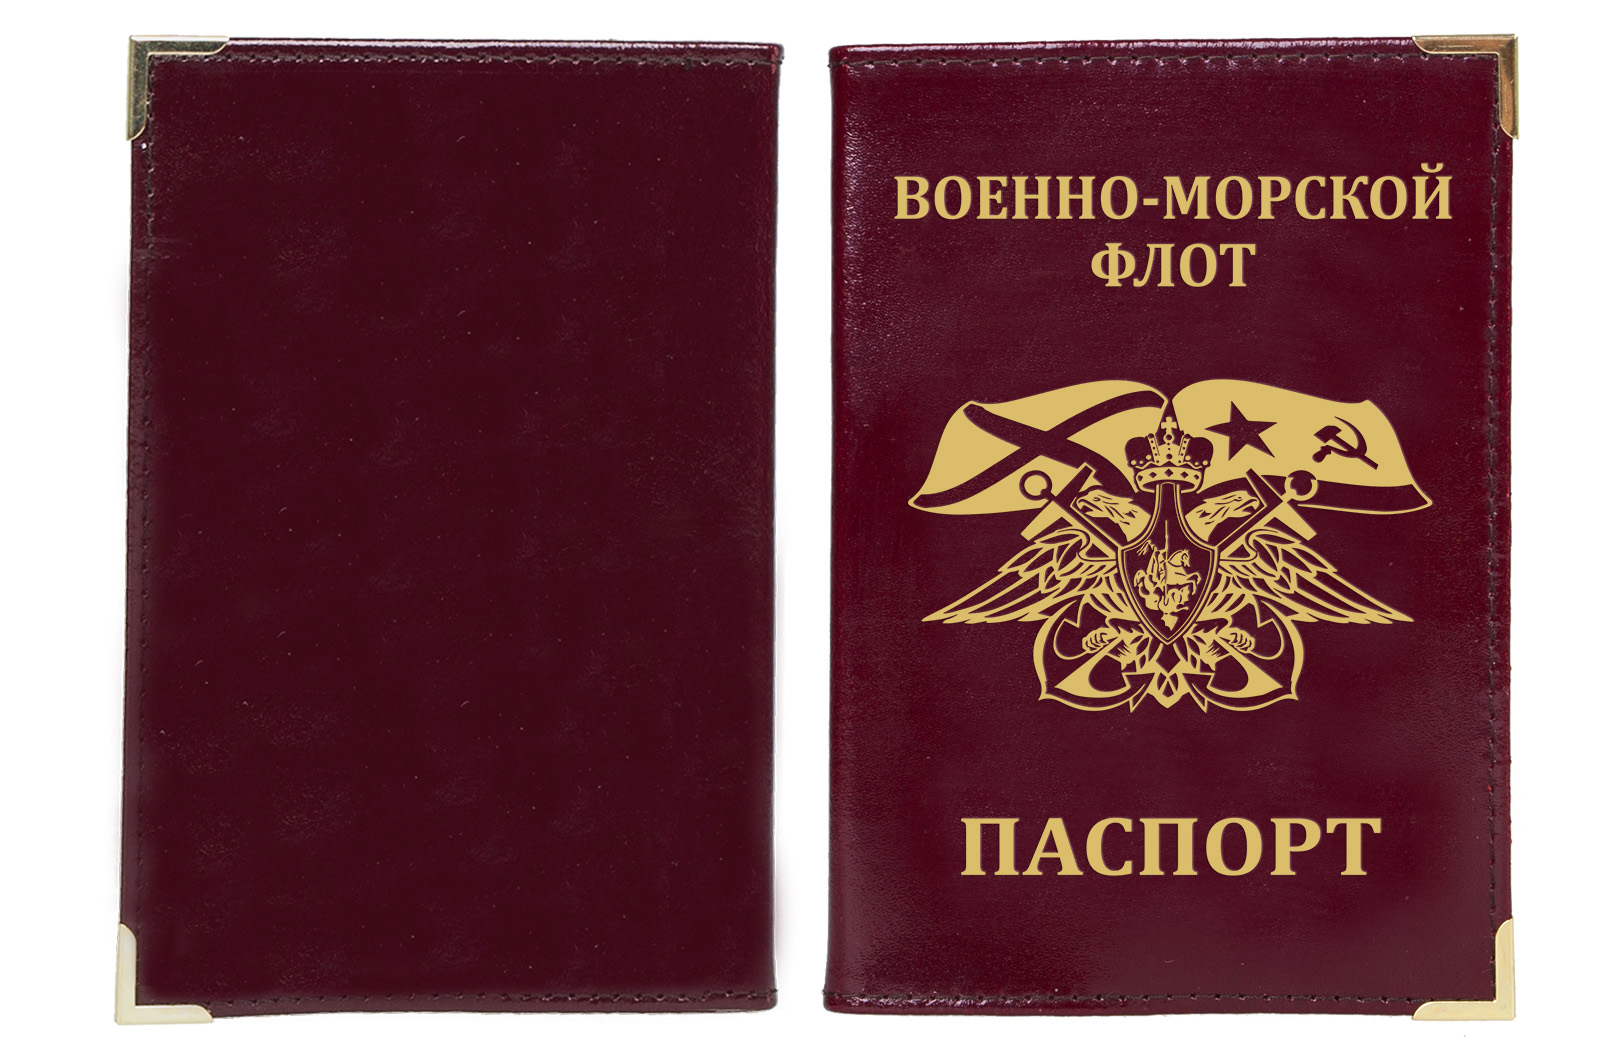 Обложка на паспорт с гербовой эмблемой ВМФ 